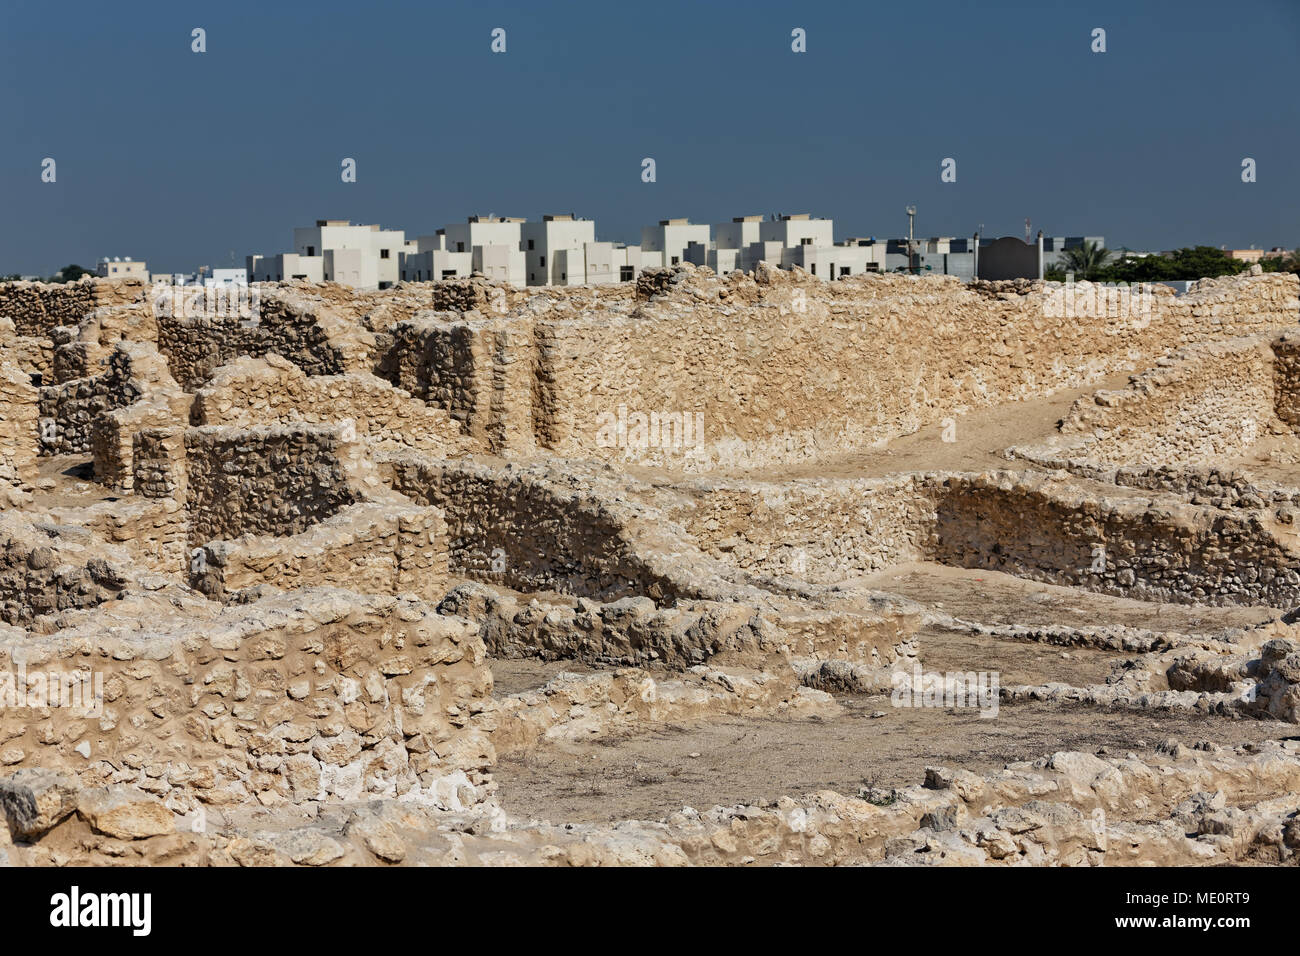 Kingdom of Bahrain. Königreich Bahrain. Saar archaeological site. Die Ruinen von Saar. Stock Photo